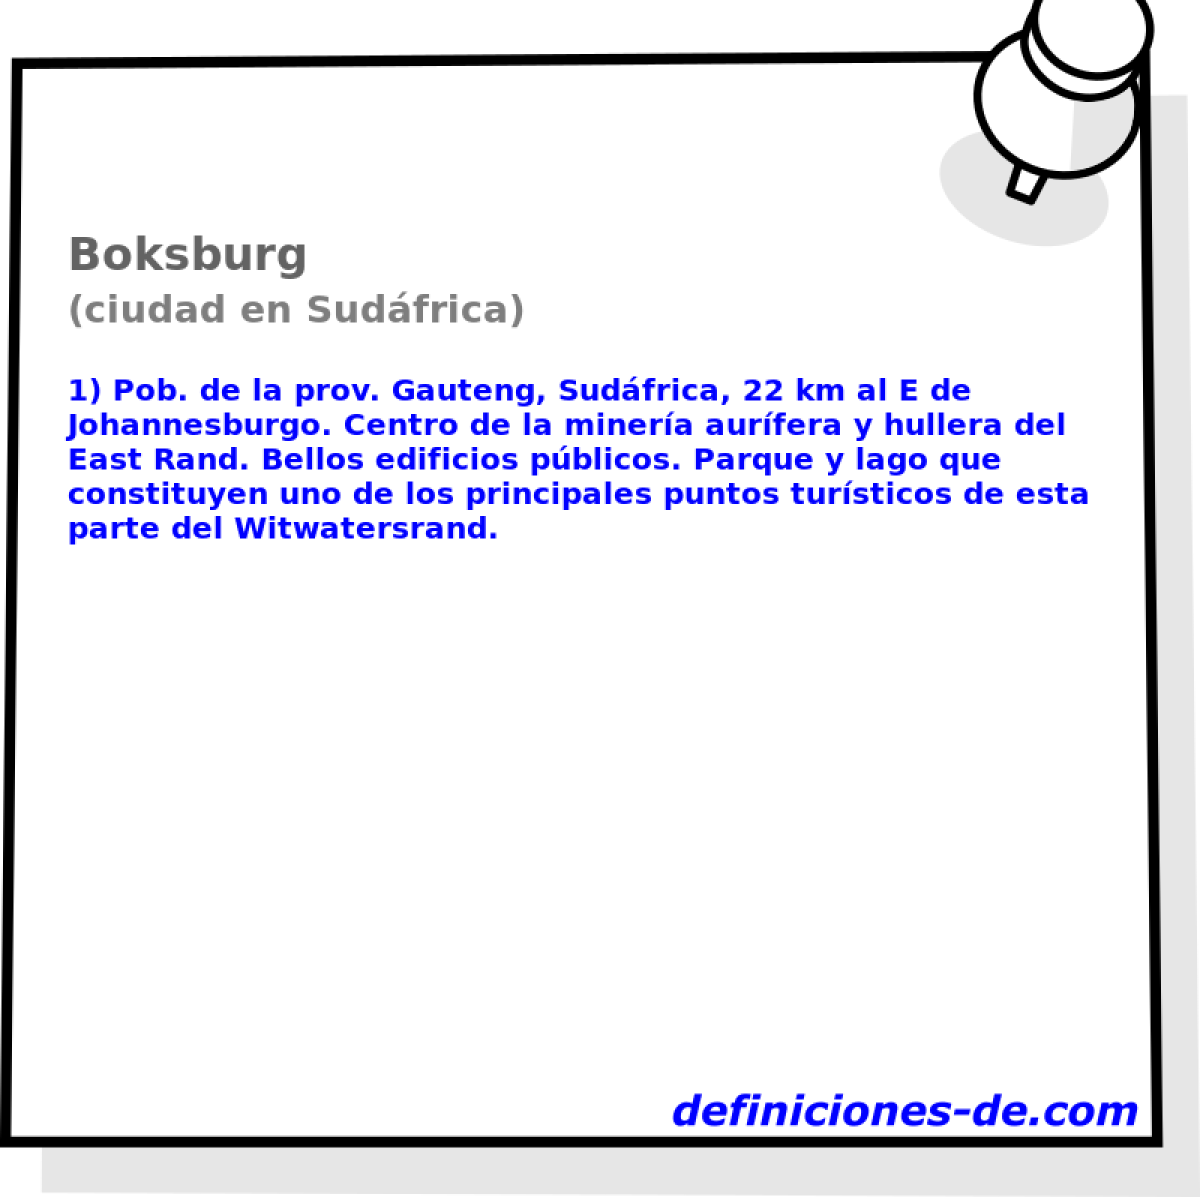 Boksburg (ciudad en Sudfrica)